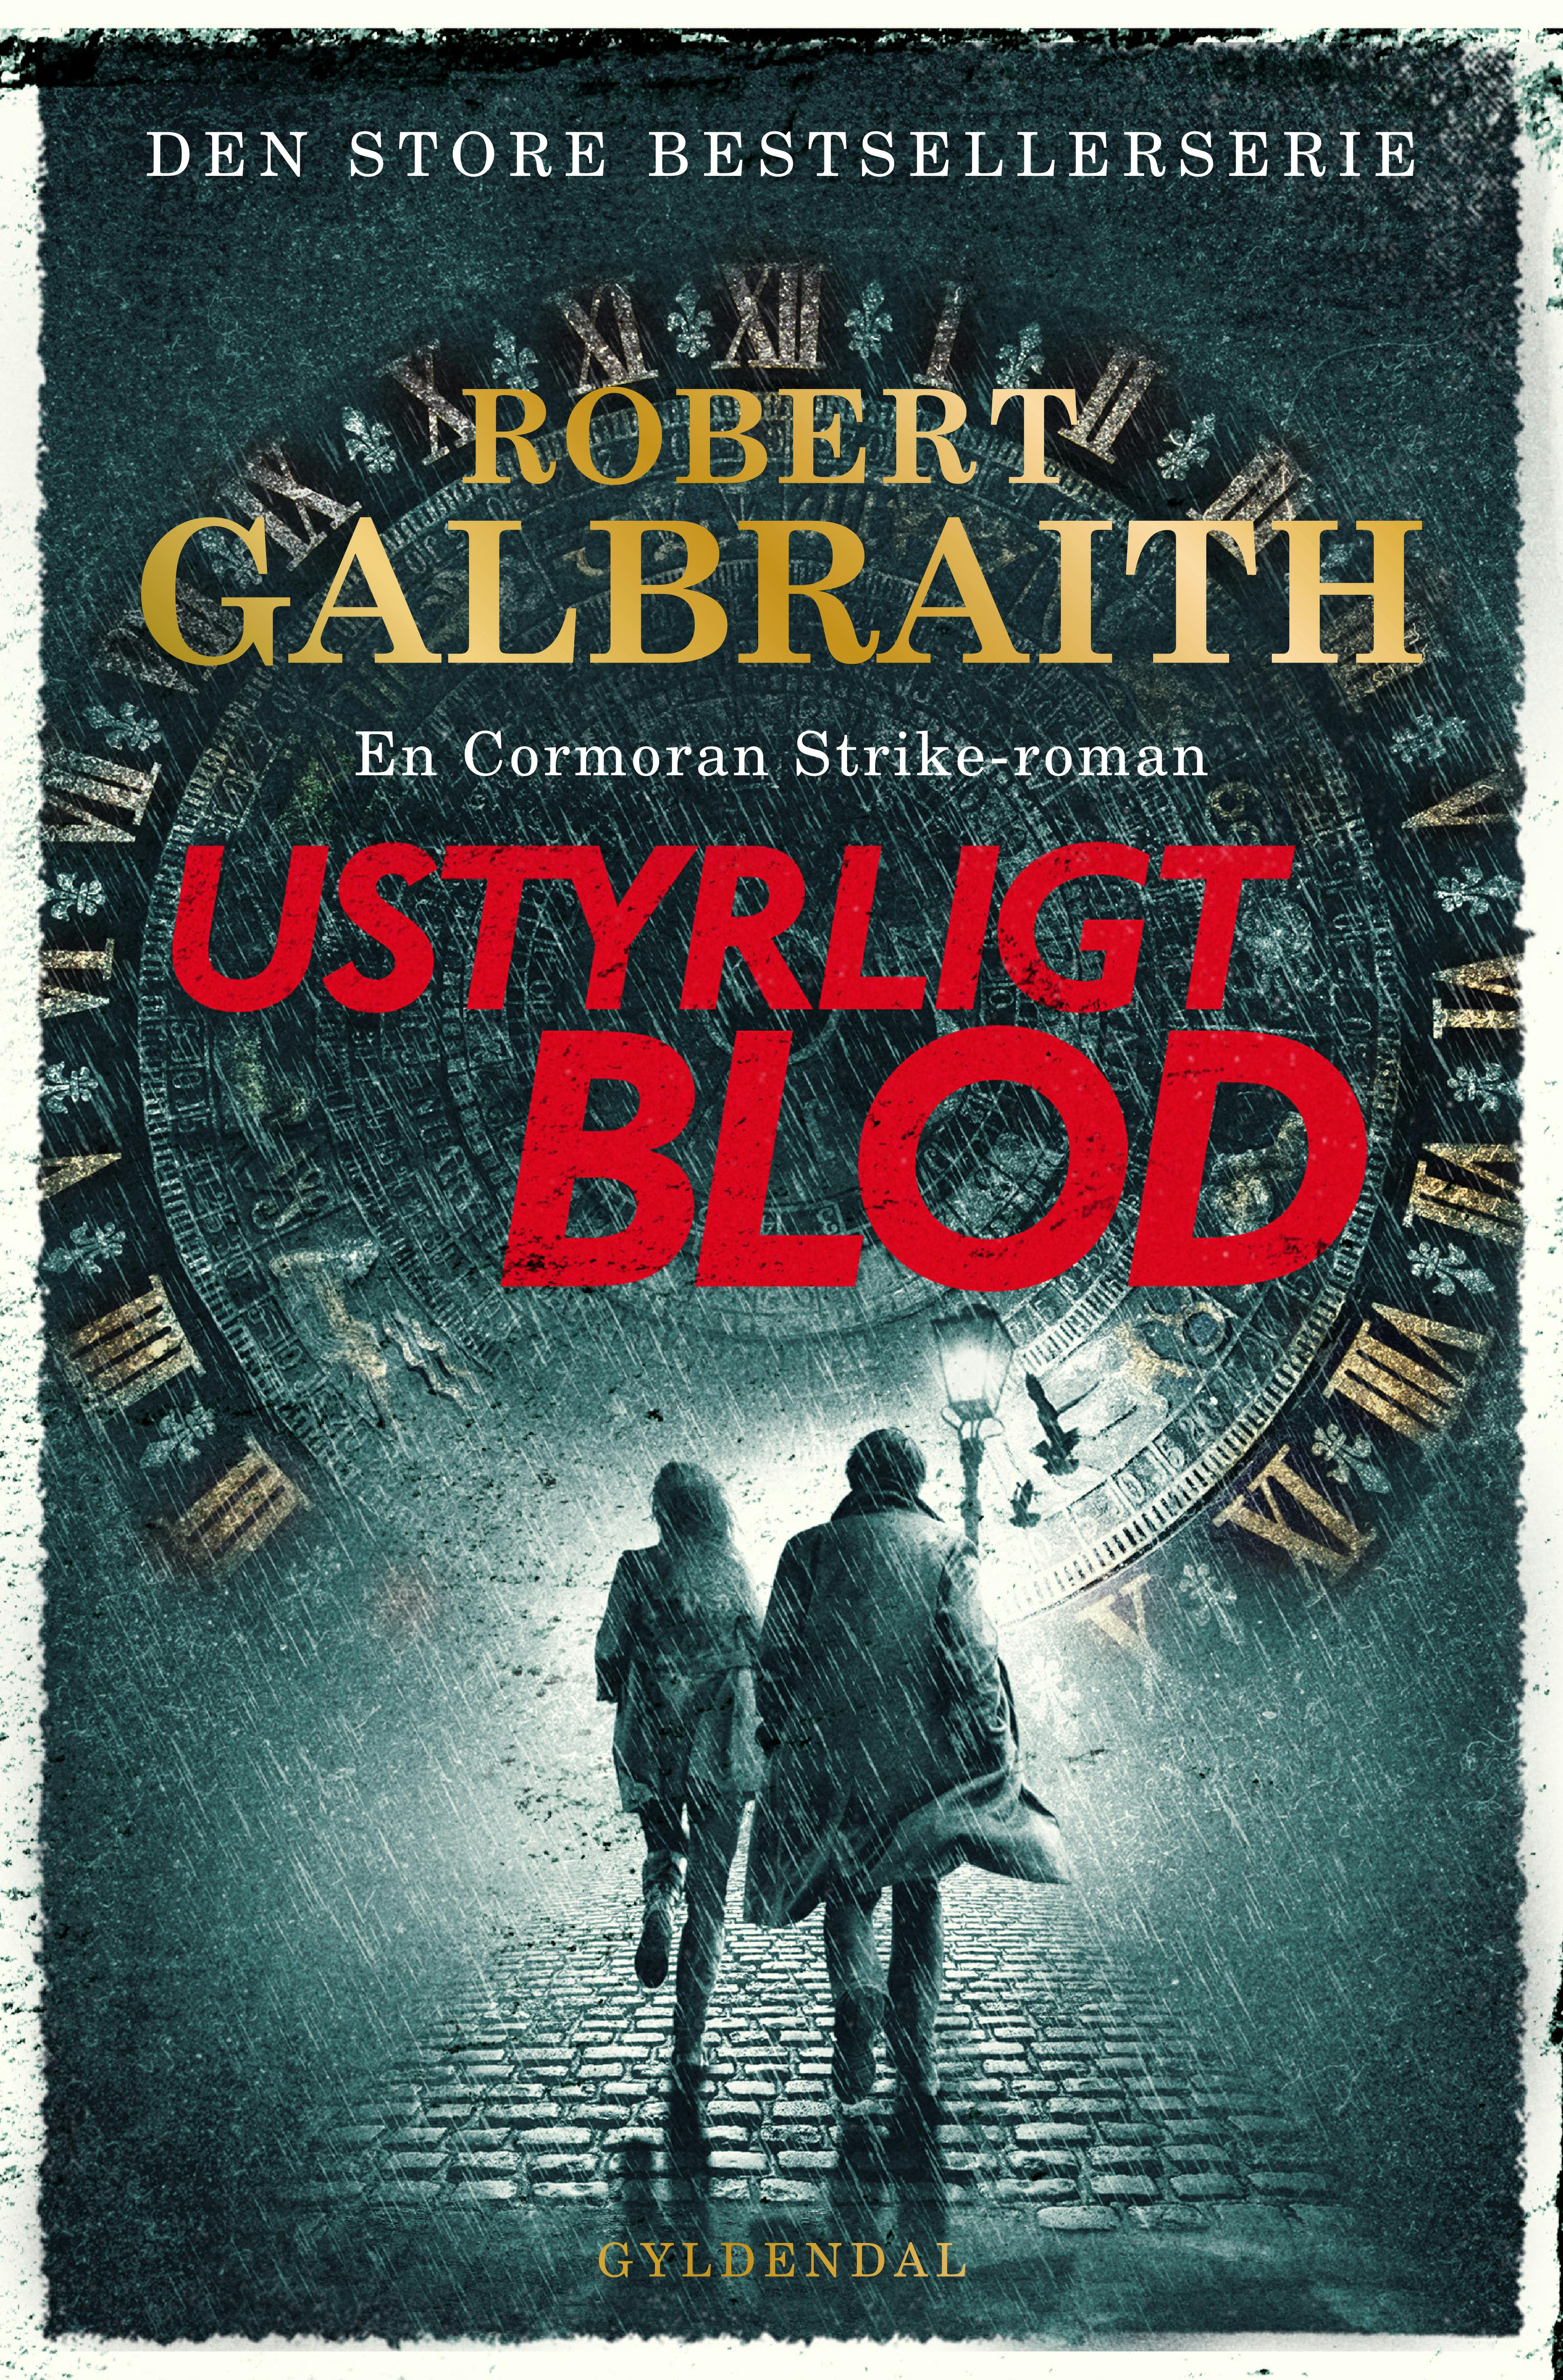 Ustyrligt Blod er den femte bog i Robert Galbraiths - alias J.K. Rowlings - formidable krimiserie om detektiven Cormoran Strike